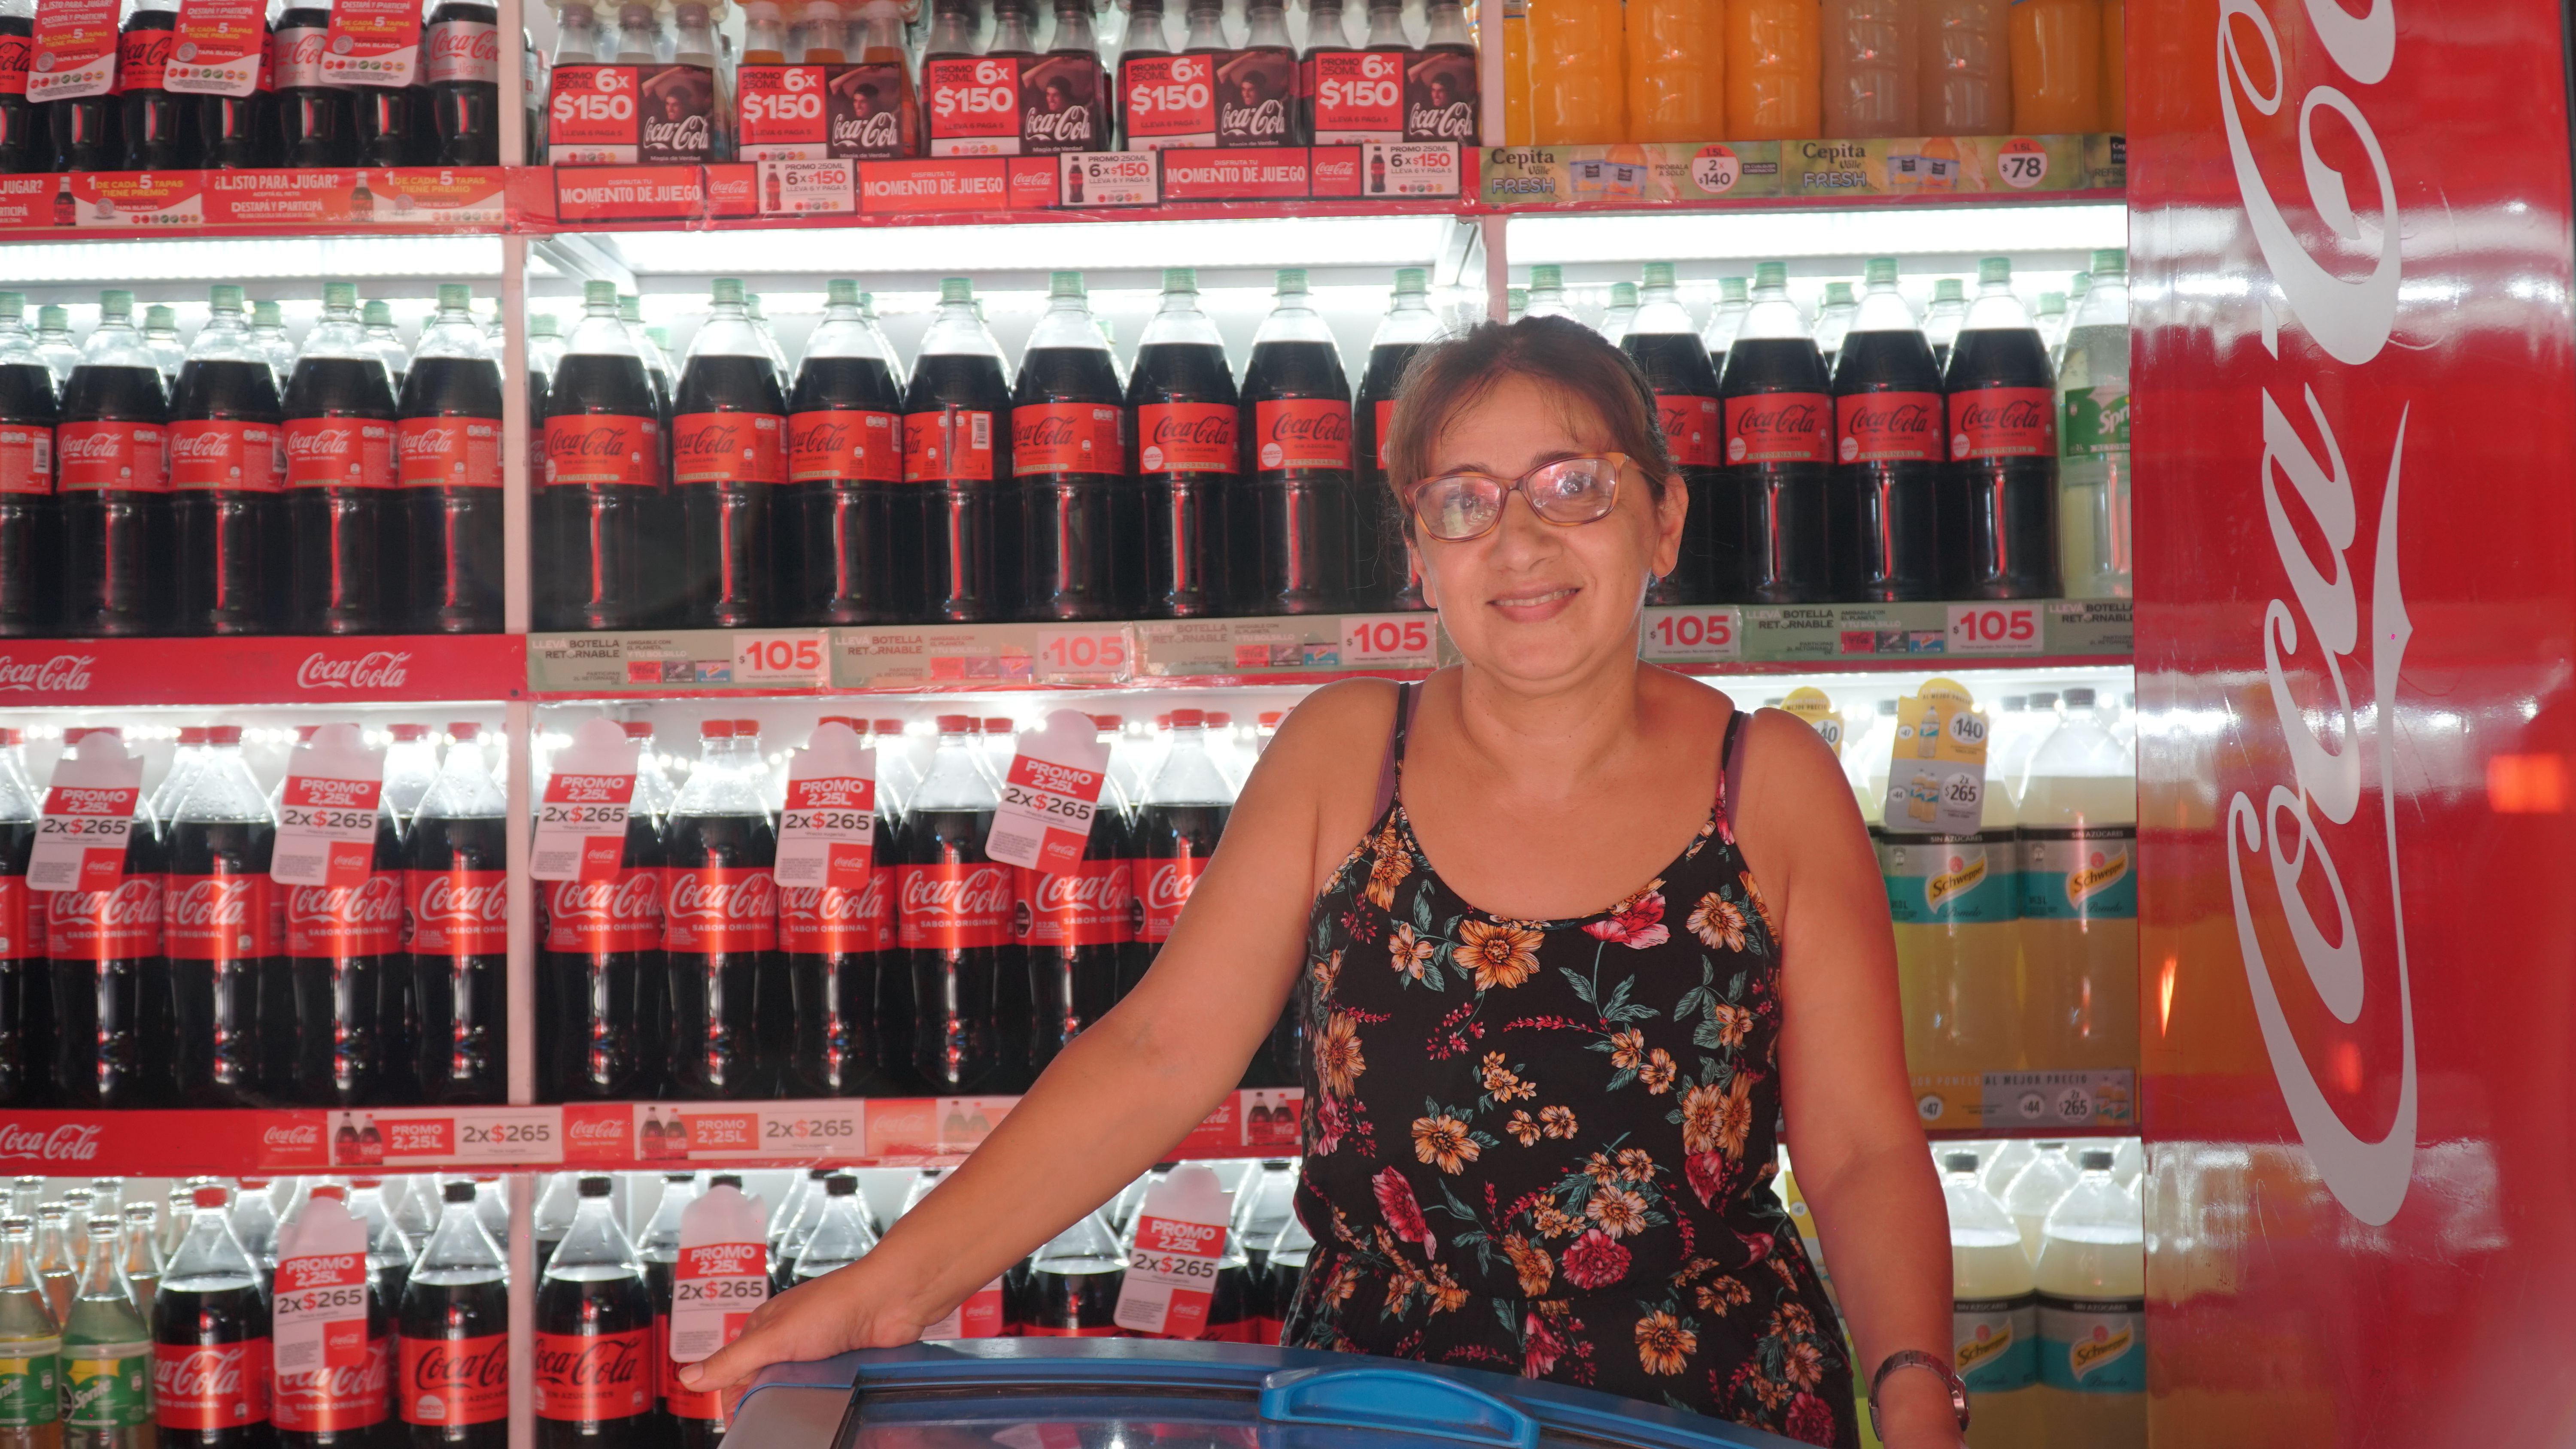 Mujer en comercio con botellas de Coca-Cola de fondo